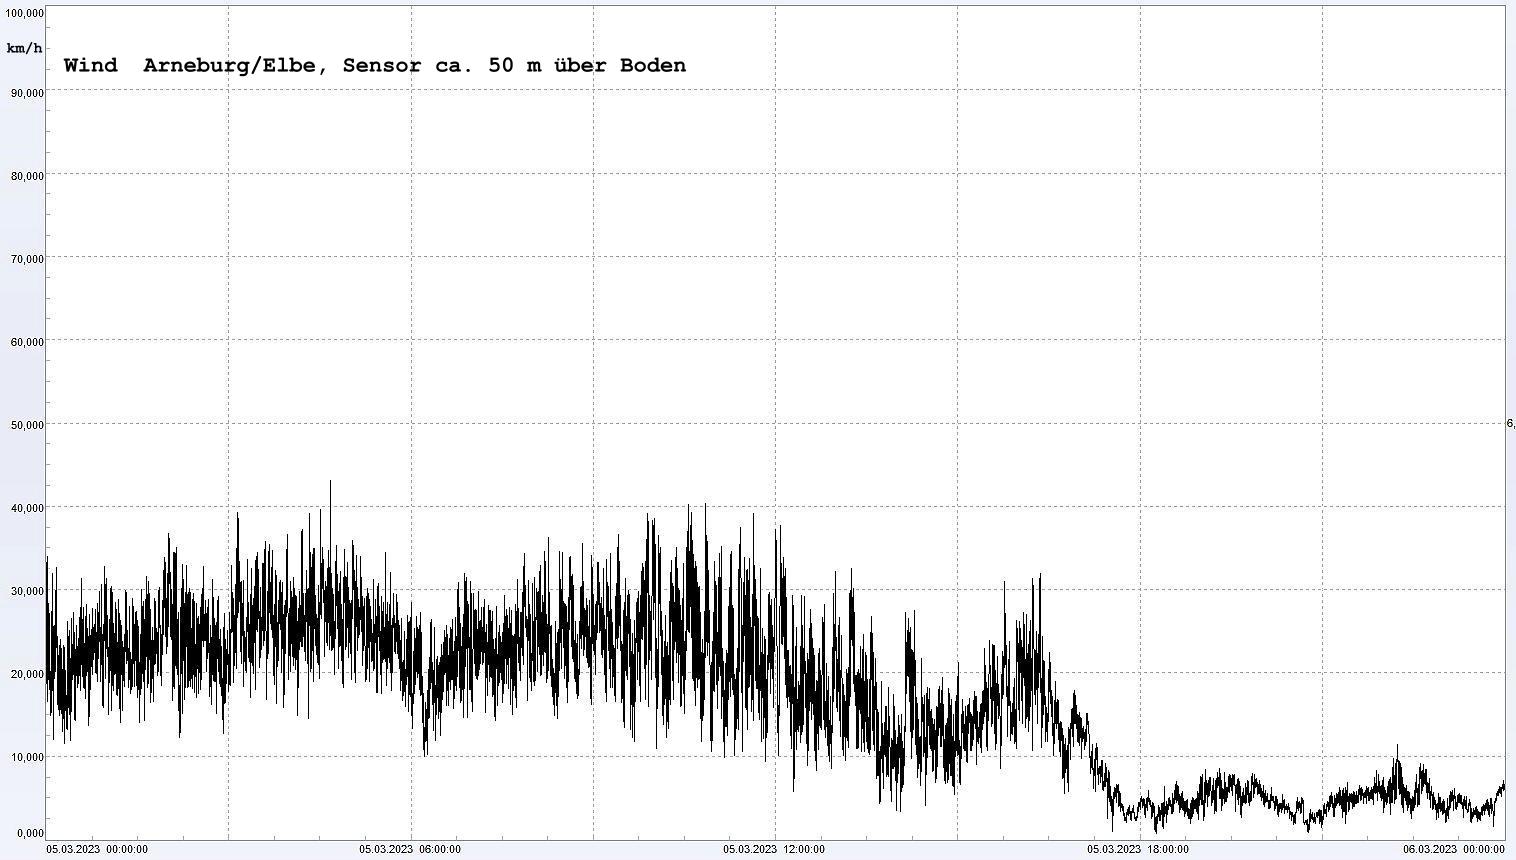 Arneburg Winddaten 05.03.2023, 
  Sensor auf Gebude, ca. 50 m ber Erdboden, 5s-Aufzeichnung